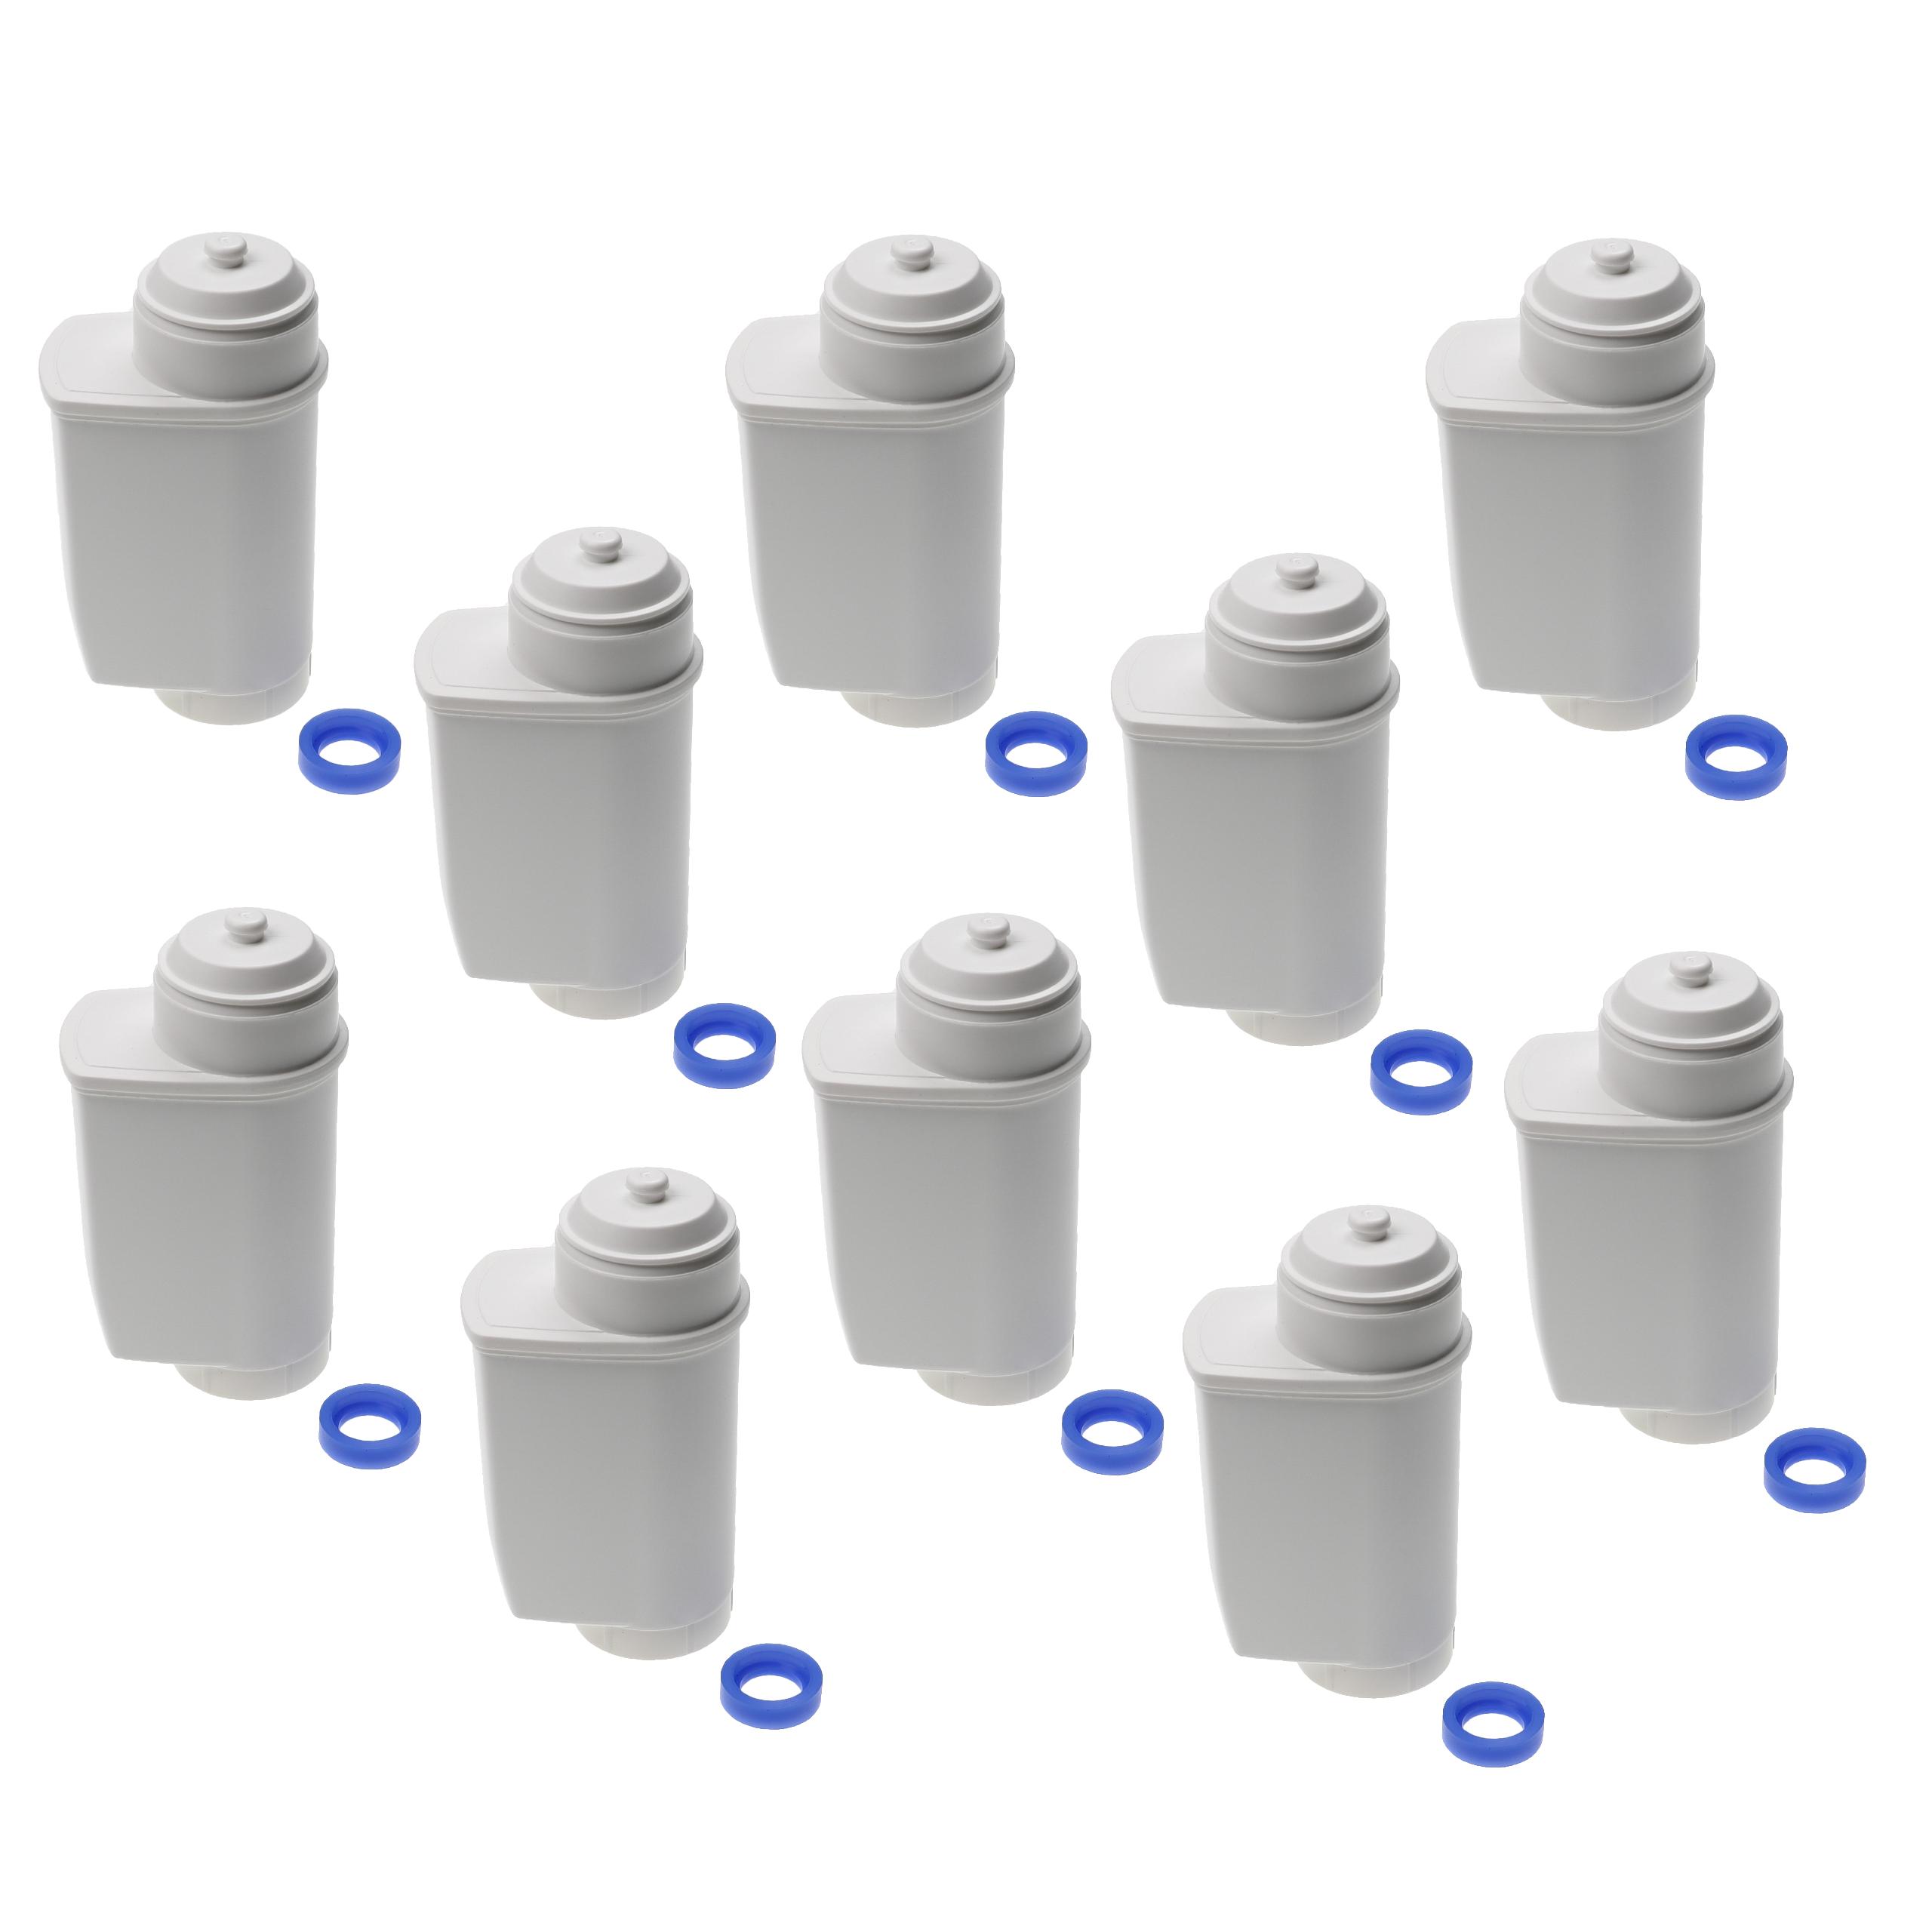 10x Wasserfilter als Ersatz für Siemens TZ70033 für Bosch Kaffeeautomat u.a. - Weiß